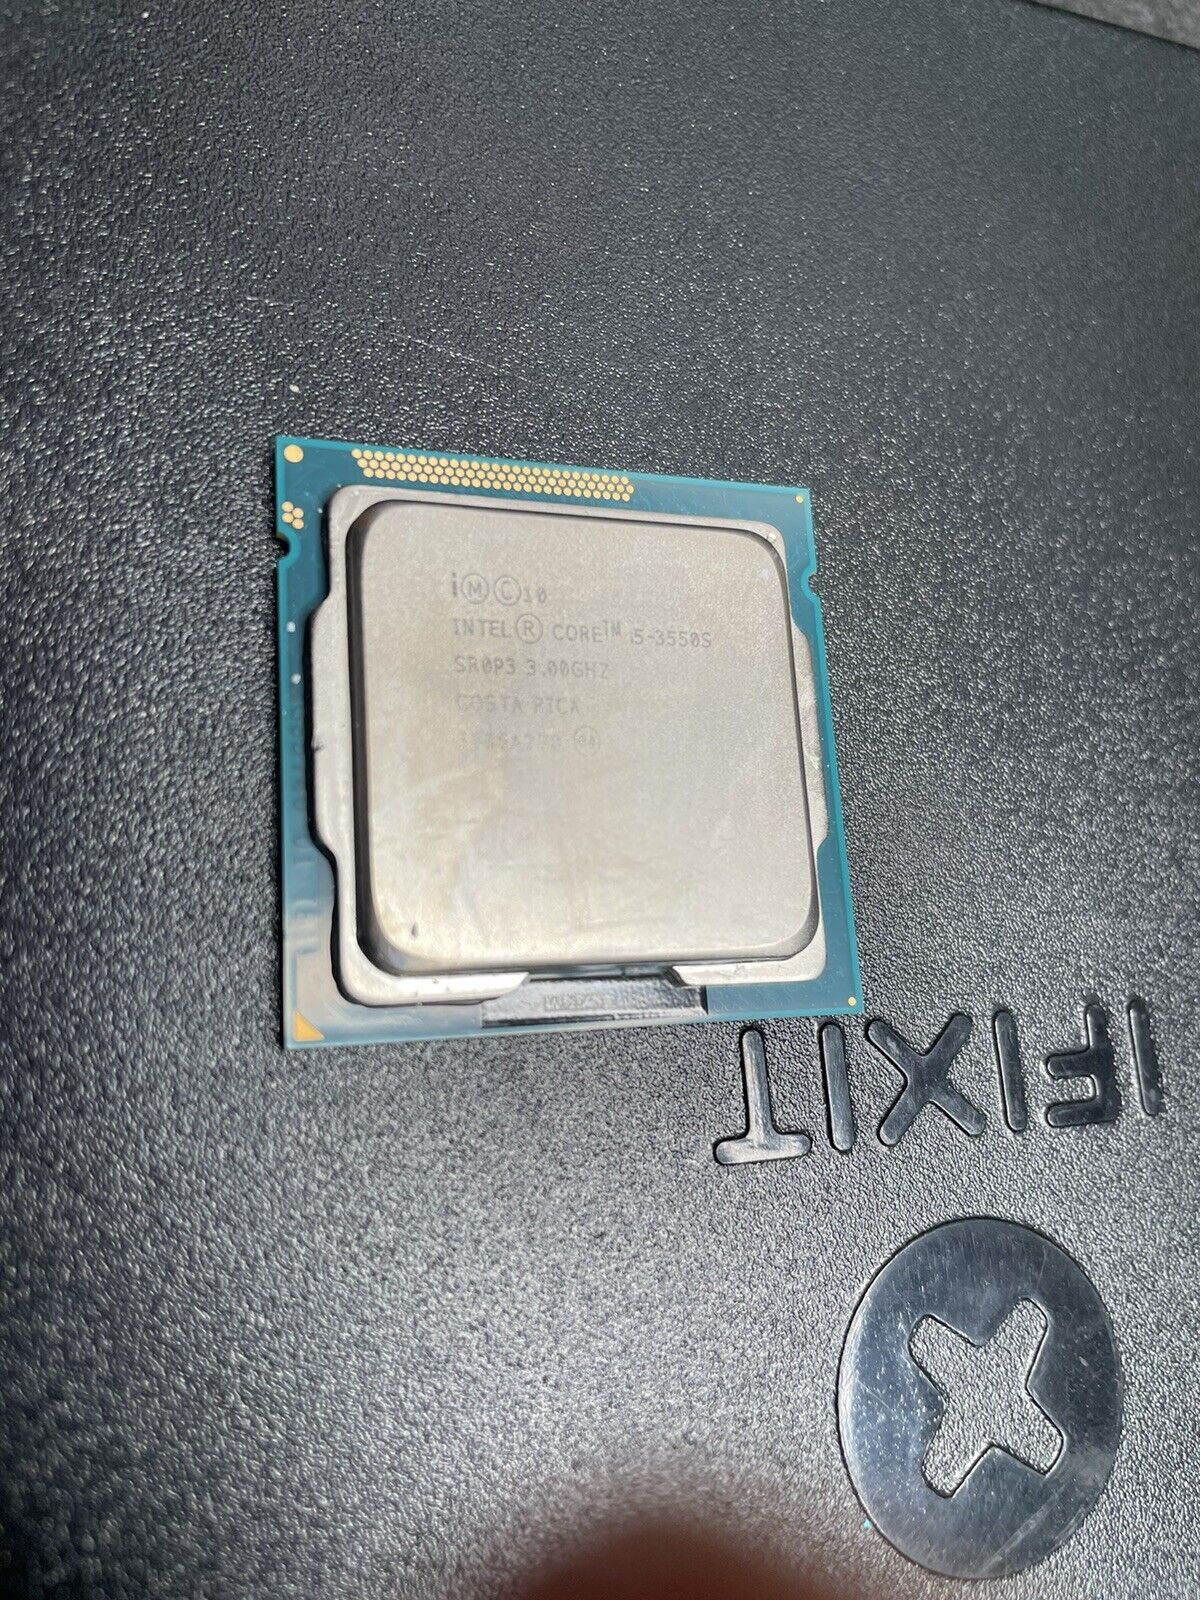 Intel Core i5-3550S 3.0 GHz Processor (CM8063701095203)